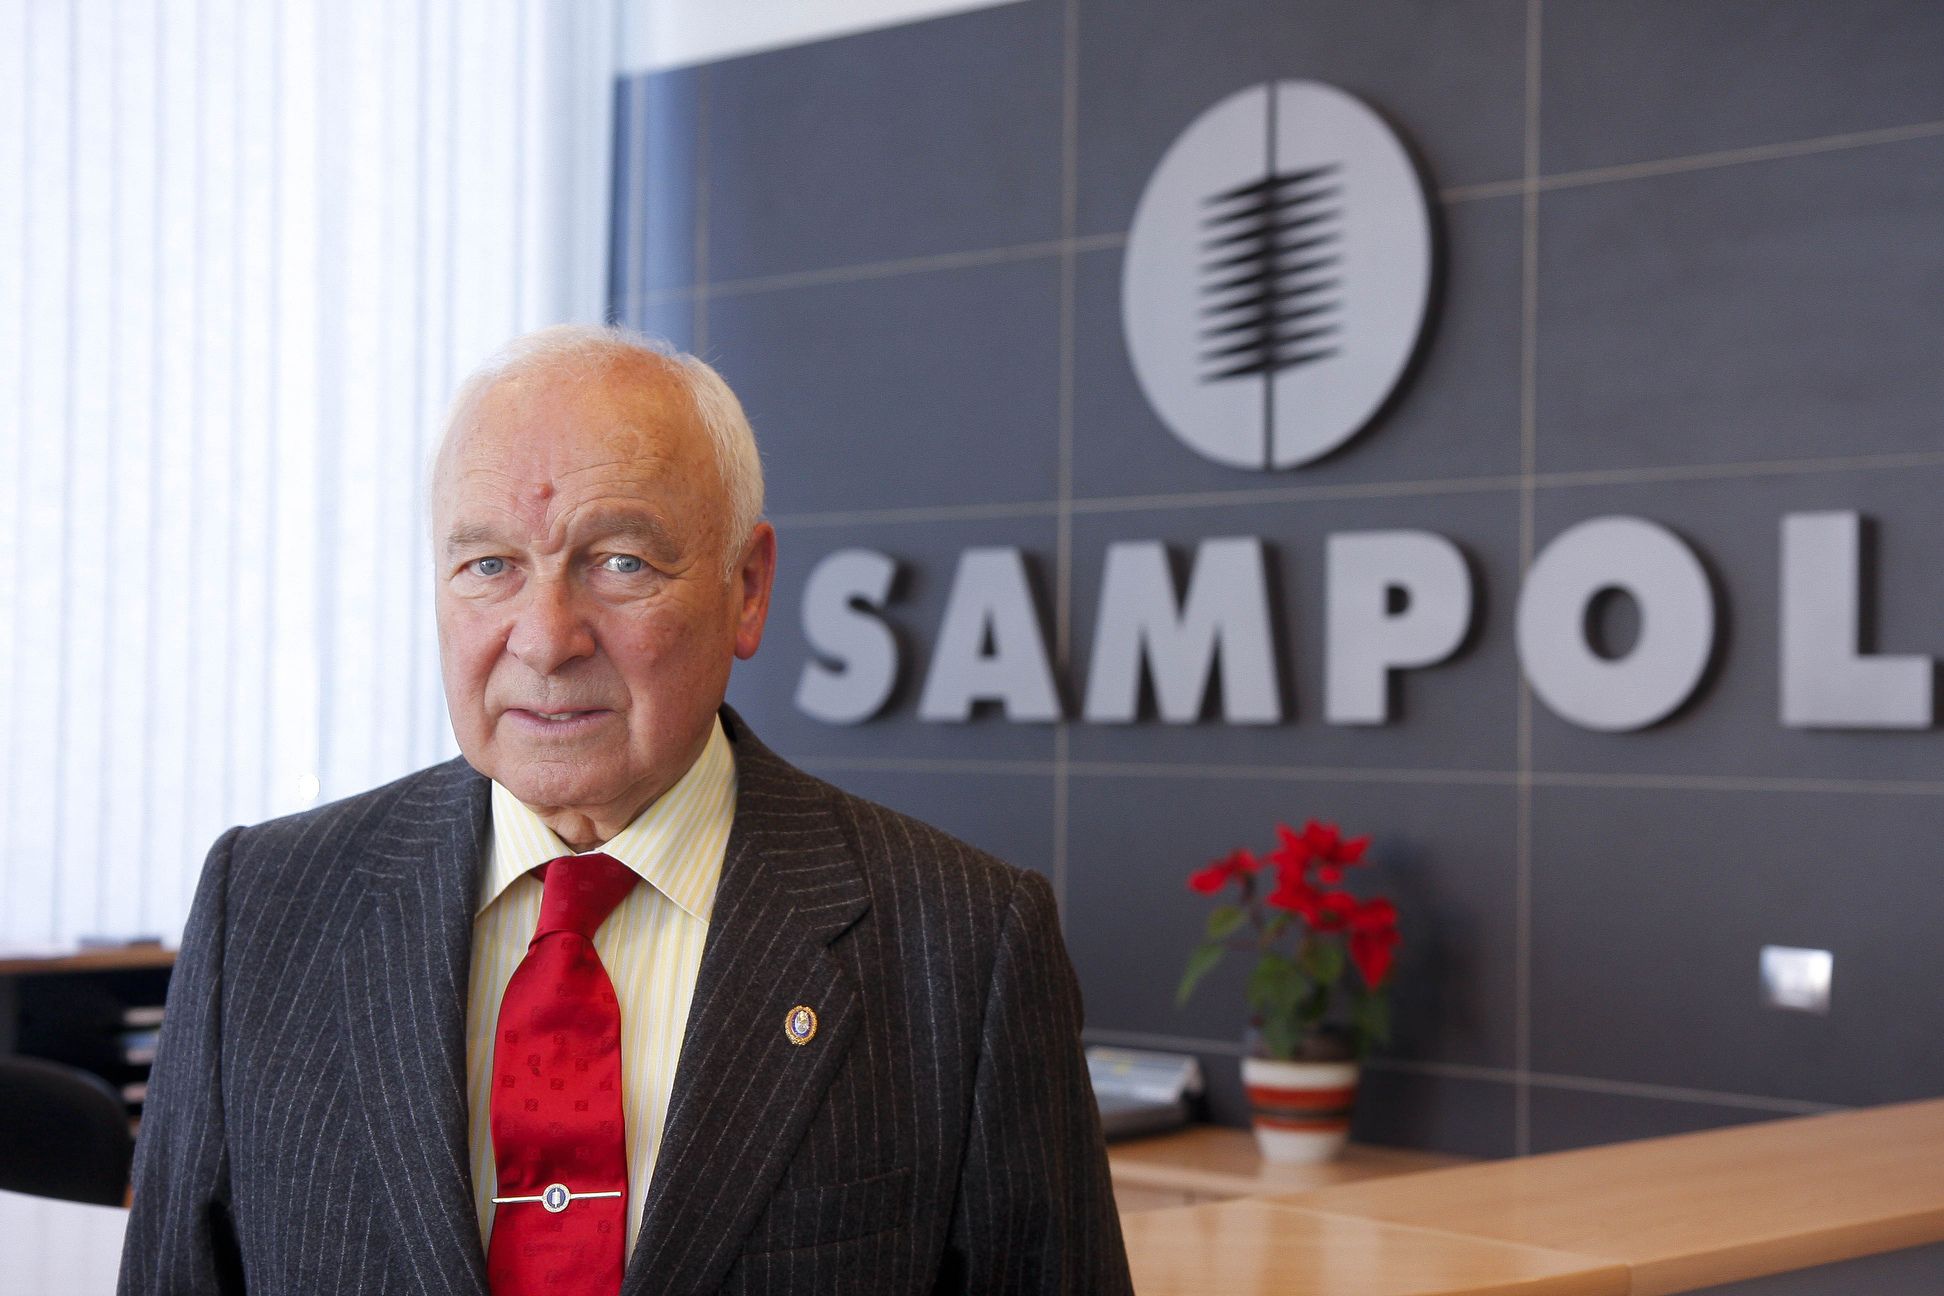 FOTOS: Fallece el empresario mallorquín Gabriel Sampol a los 87 años